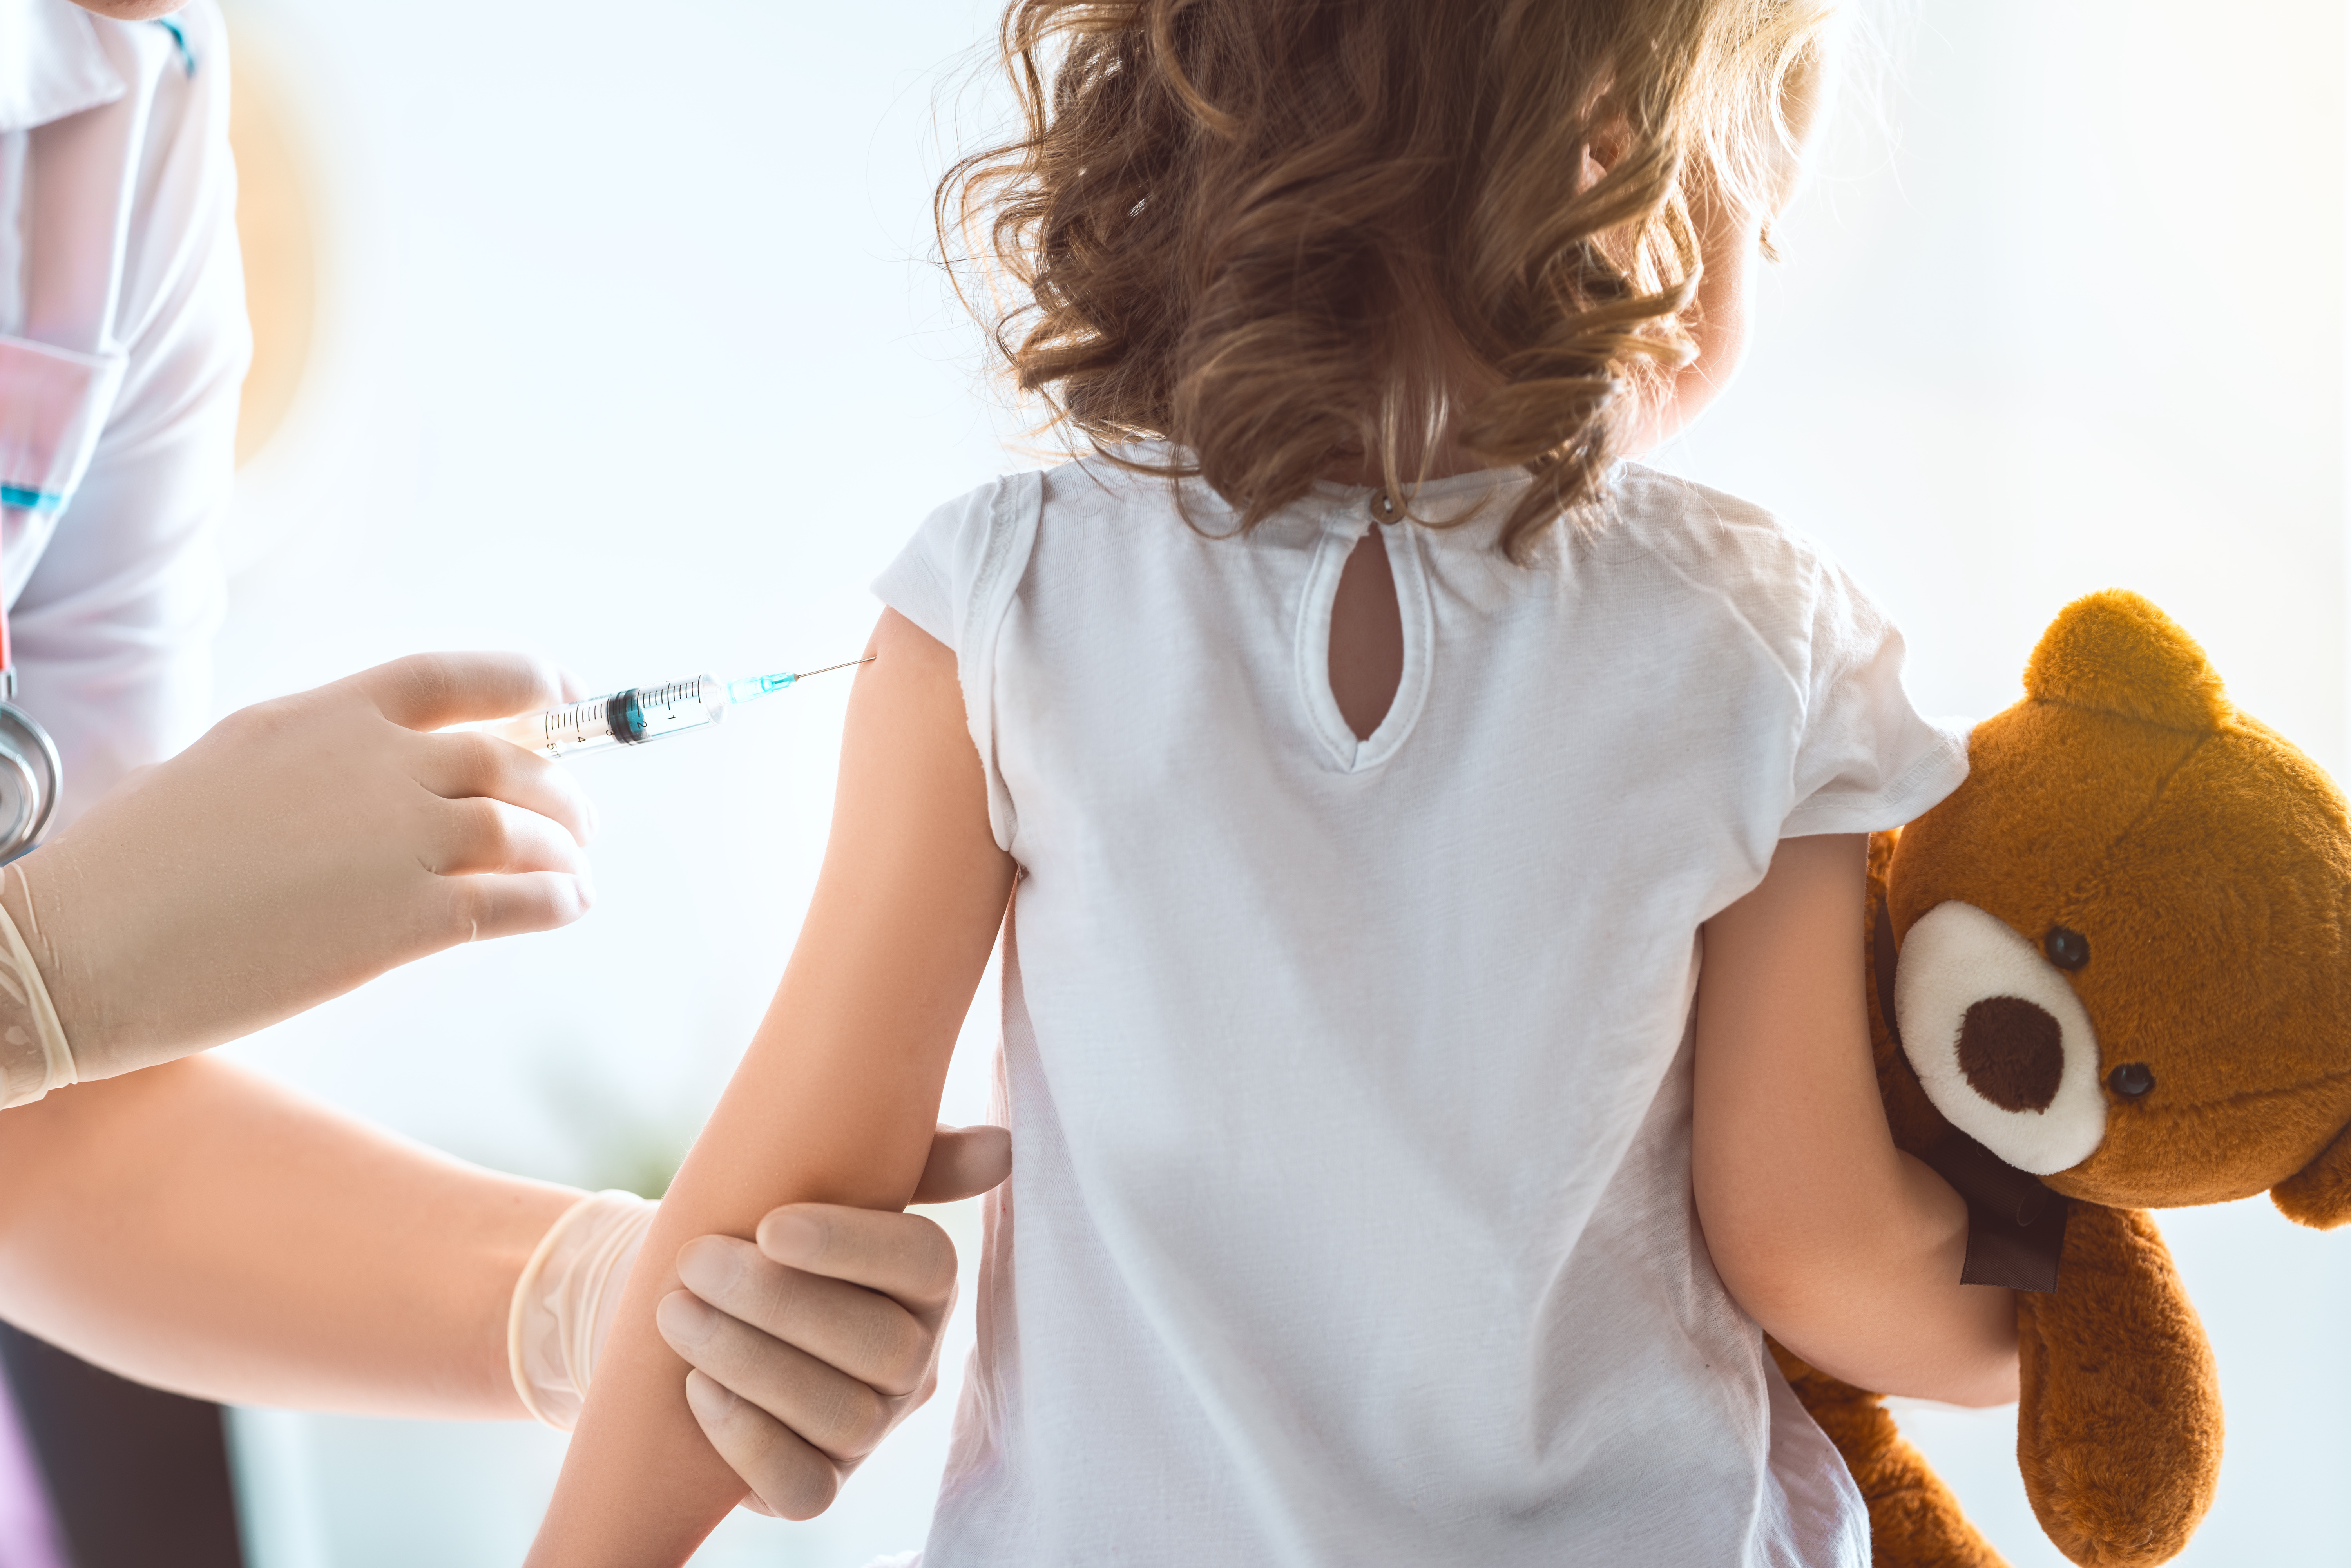 Crianças recebem vacina errada em PE e têm efeitos colaterais graves